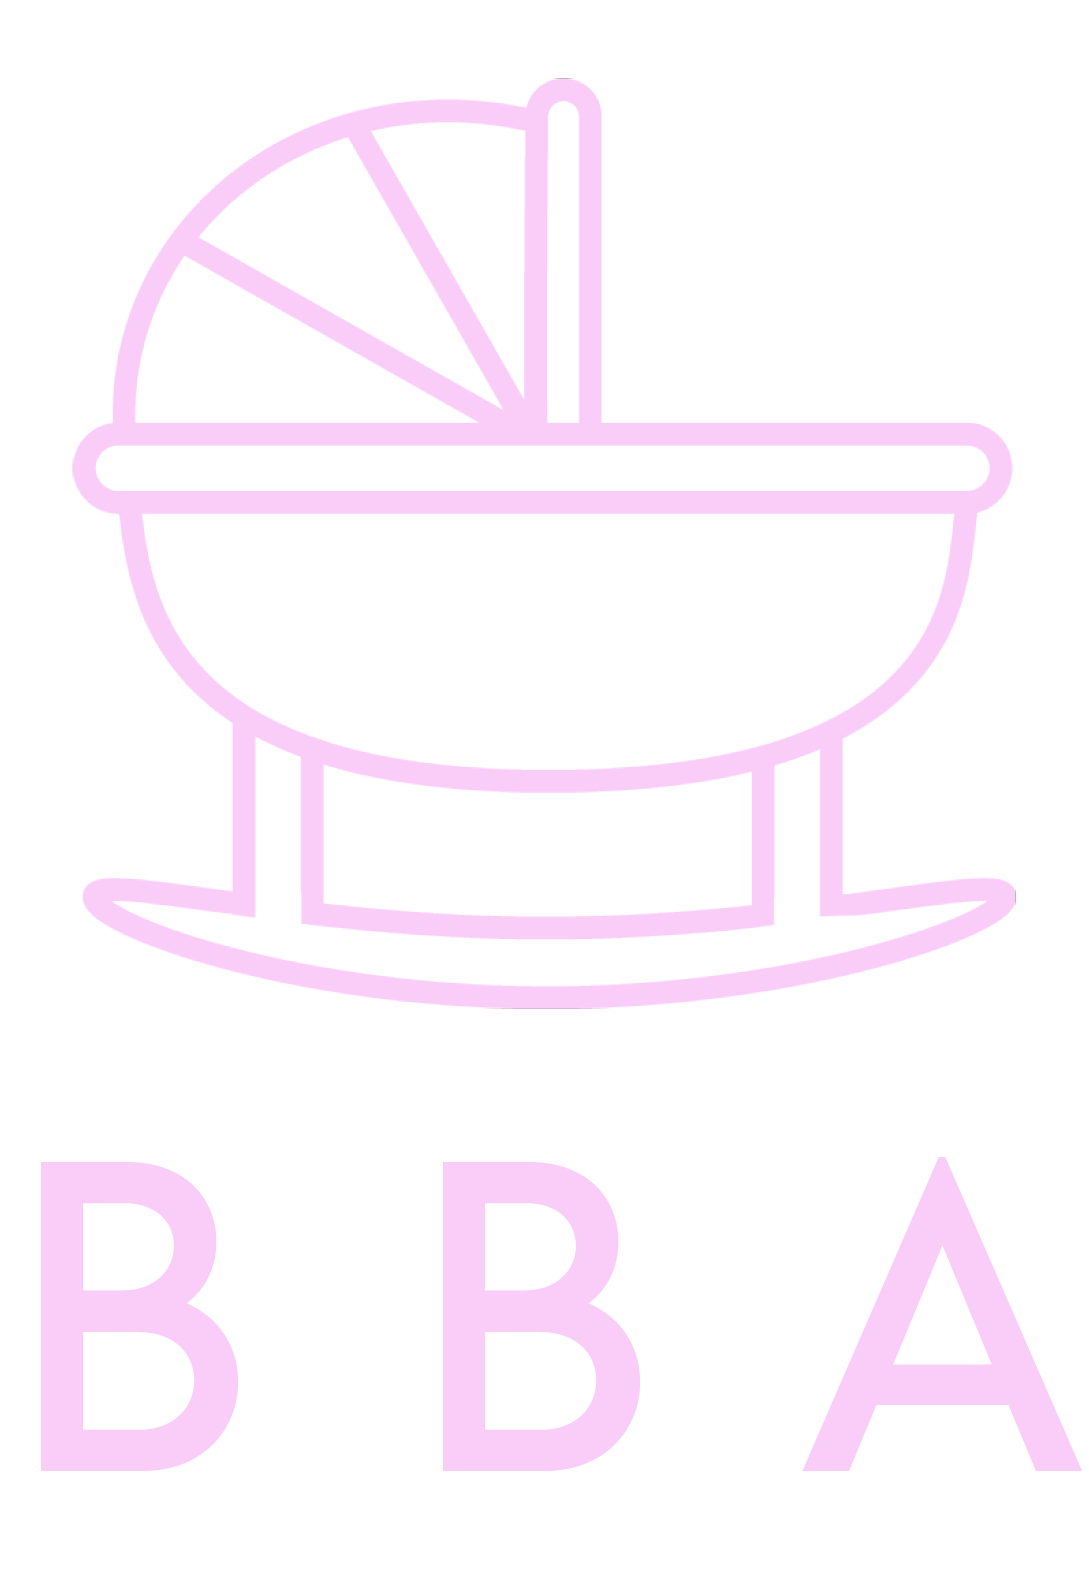 The British Birthing Academy